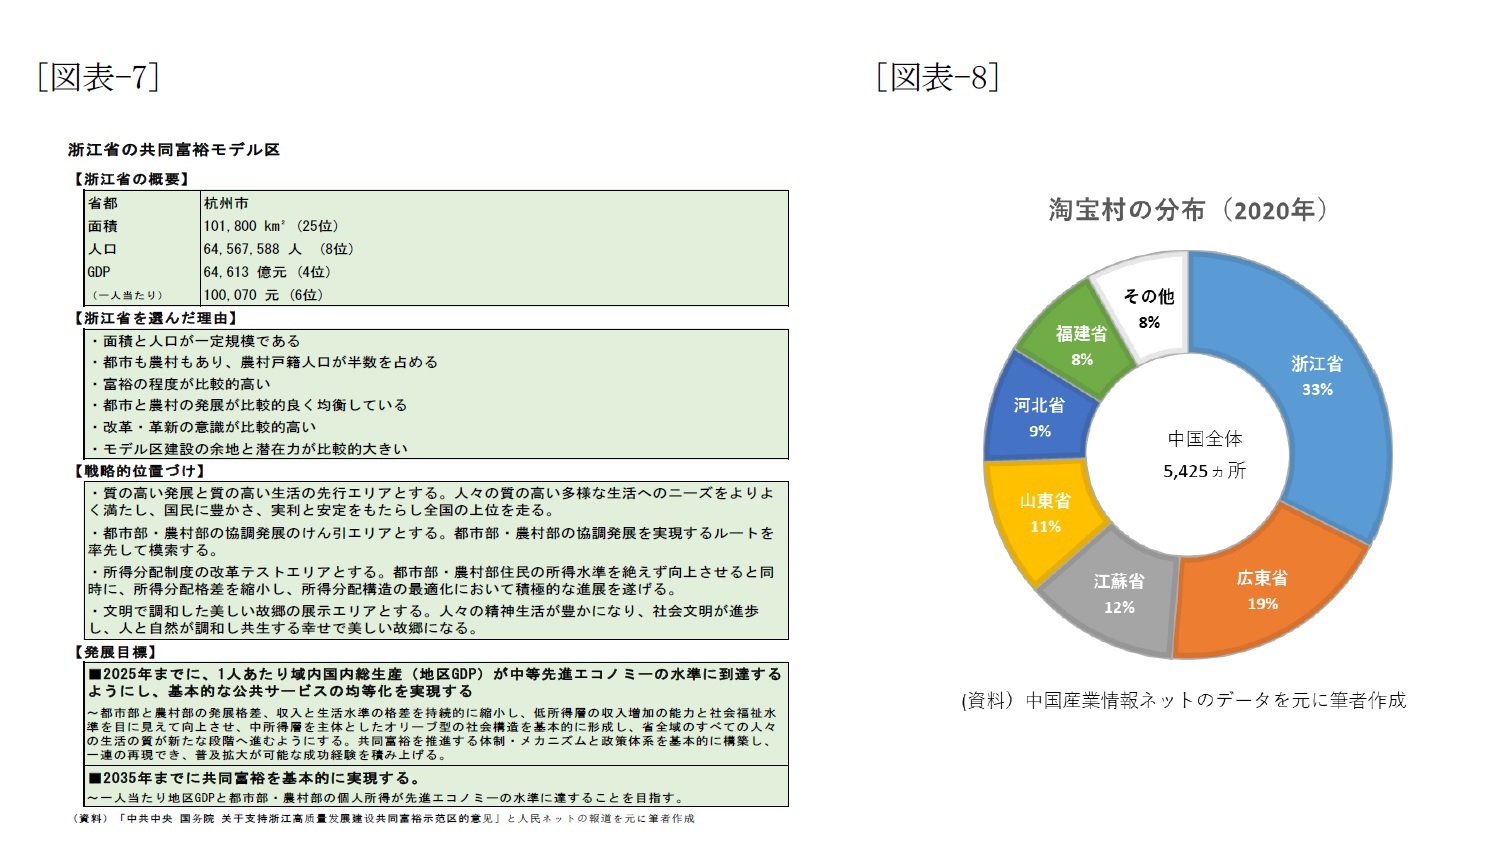 [図表-7]浙江省の共同富裕モデル表/[図表-8]淘宝村の分布(2020年)